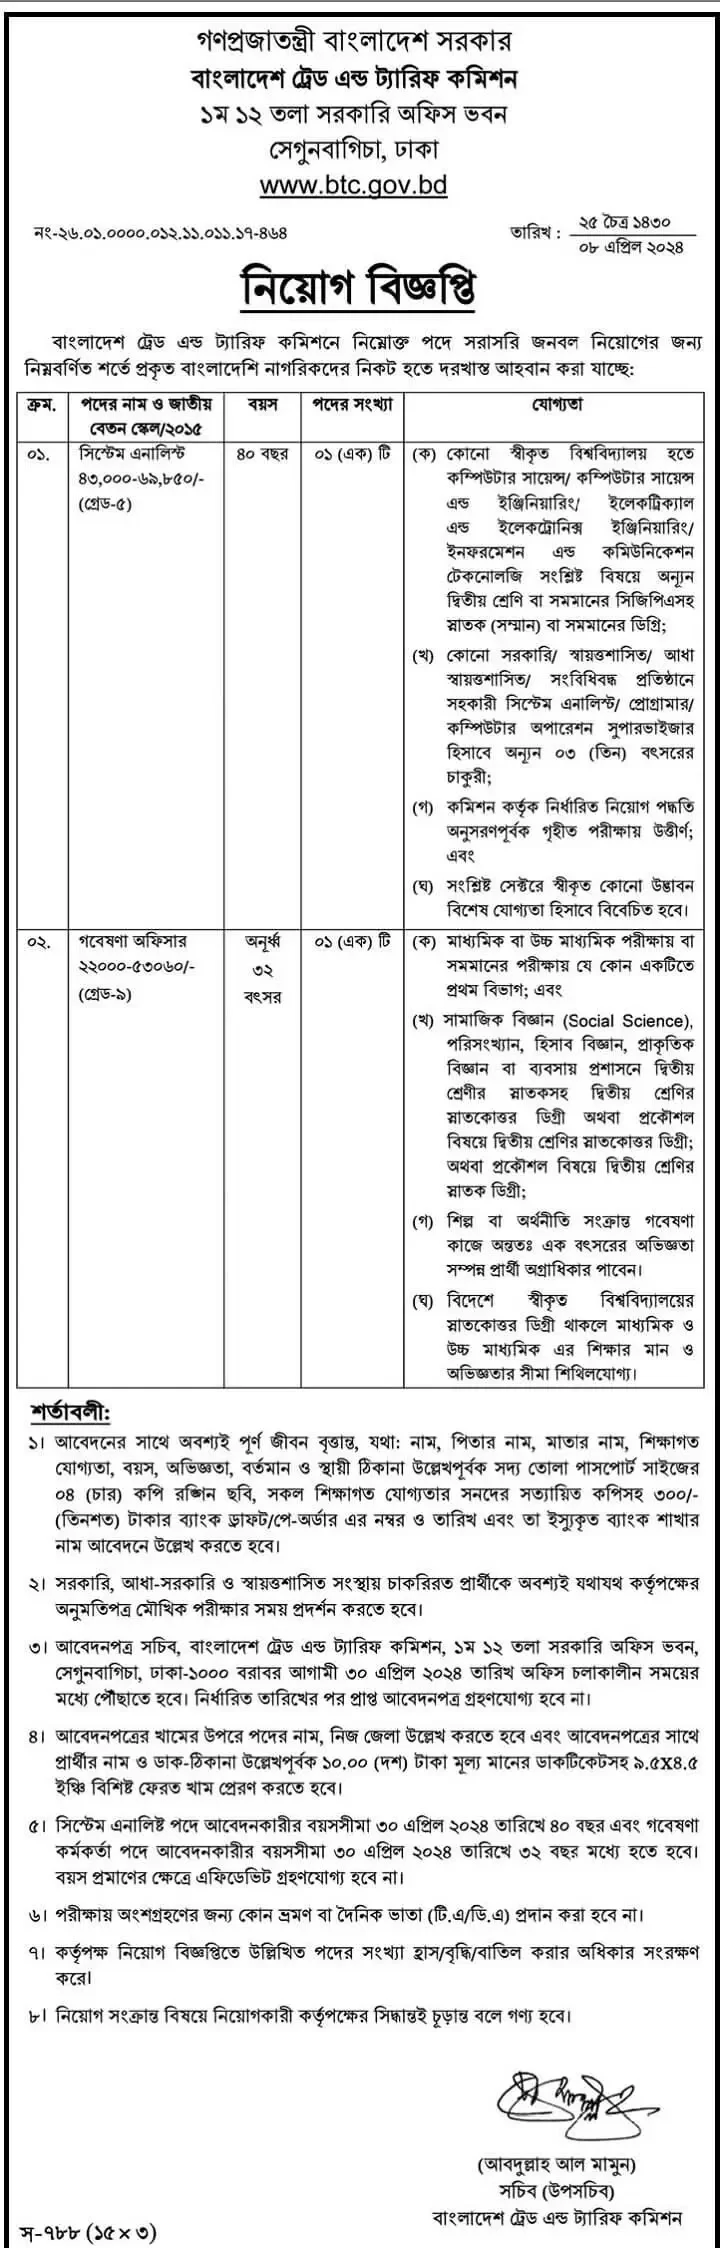 বাংলাদেশ ট্রেড এন্ড ট্যারিফ কমিশন নিয়োগ বিজ্ঞপ্তি ২০২৪ - Bangladesh Trade and Tariff Commission Job Circular 2024